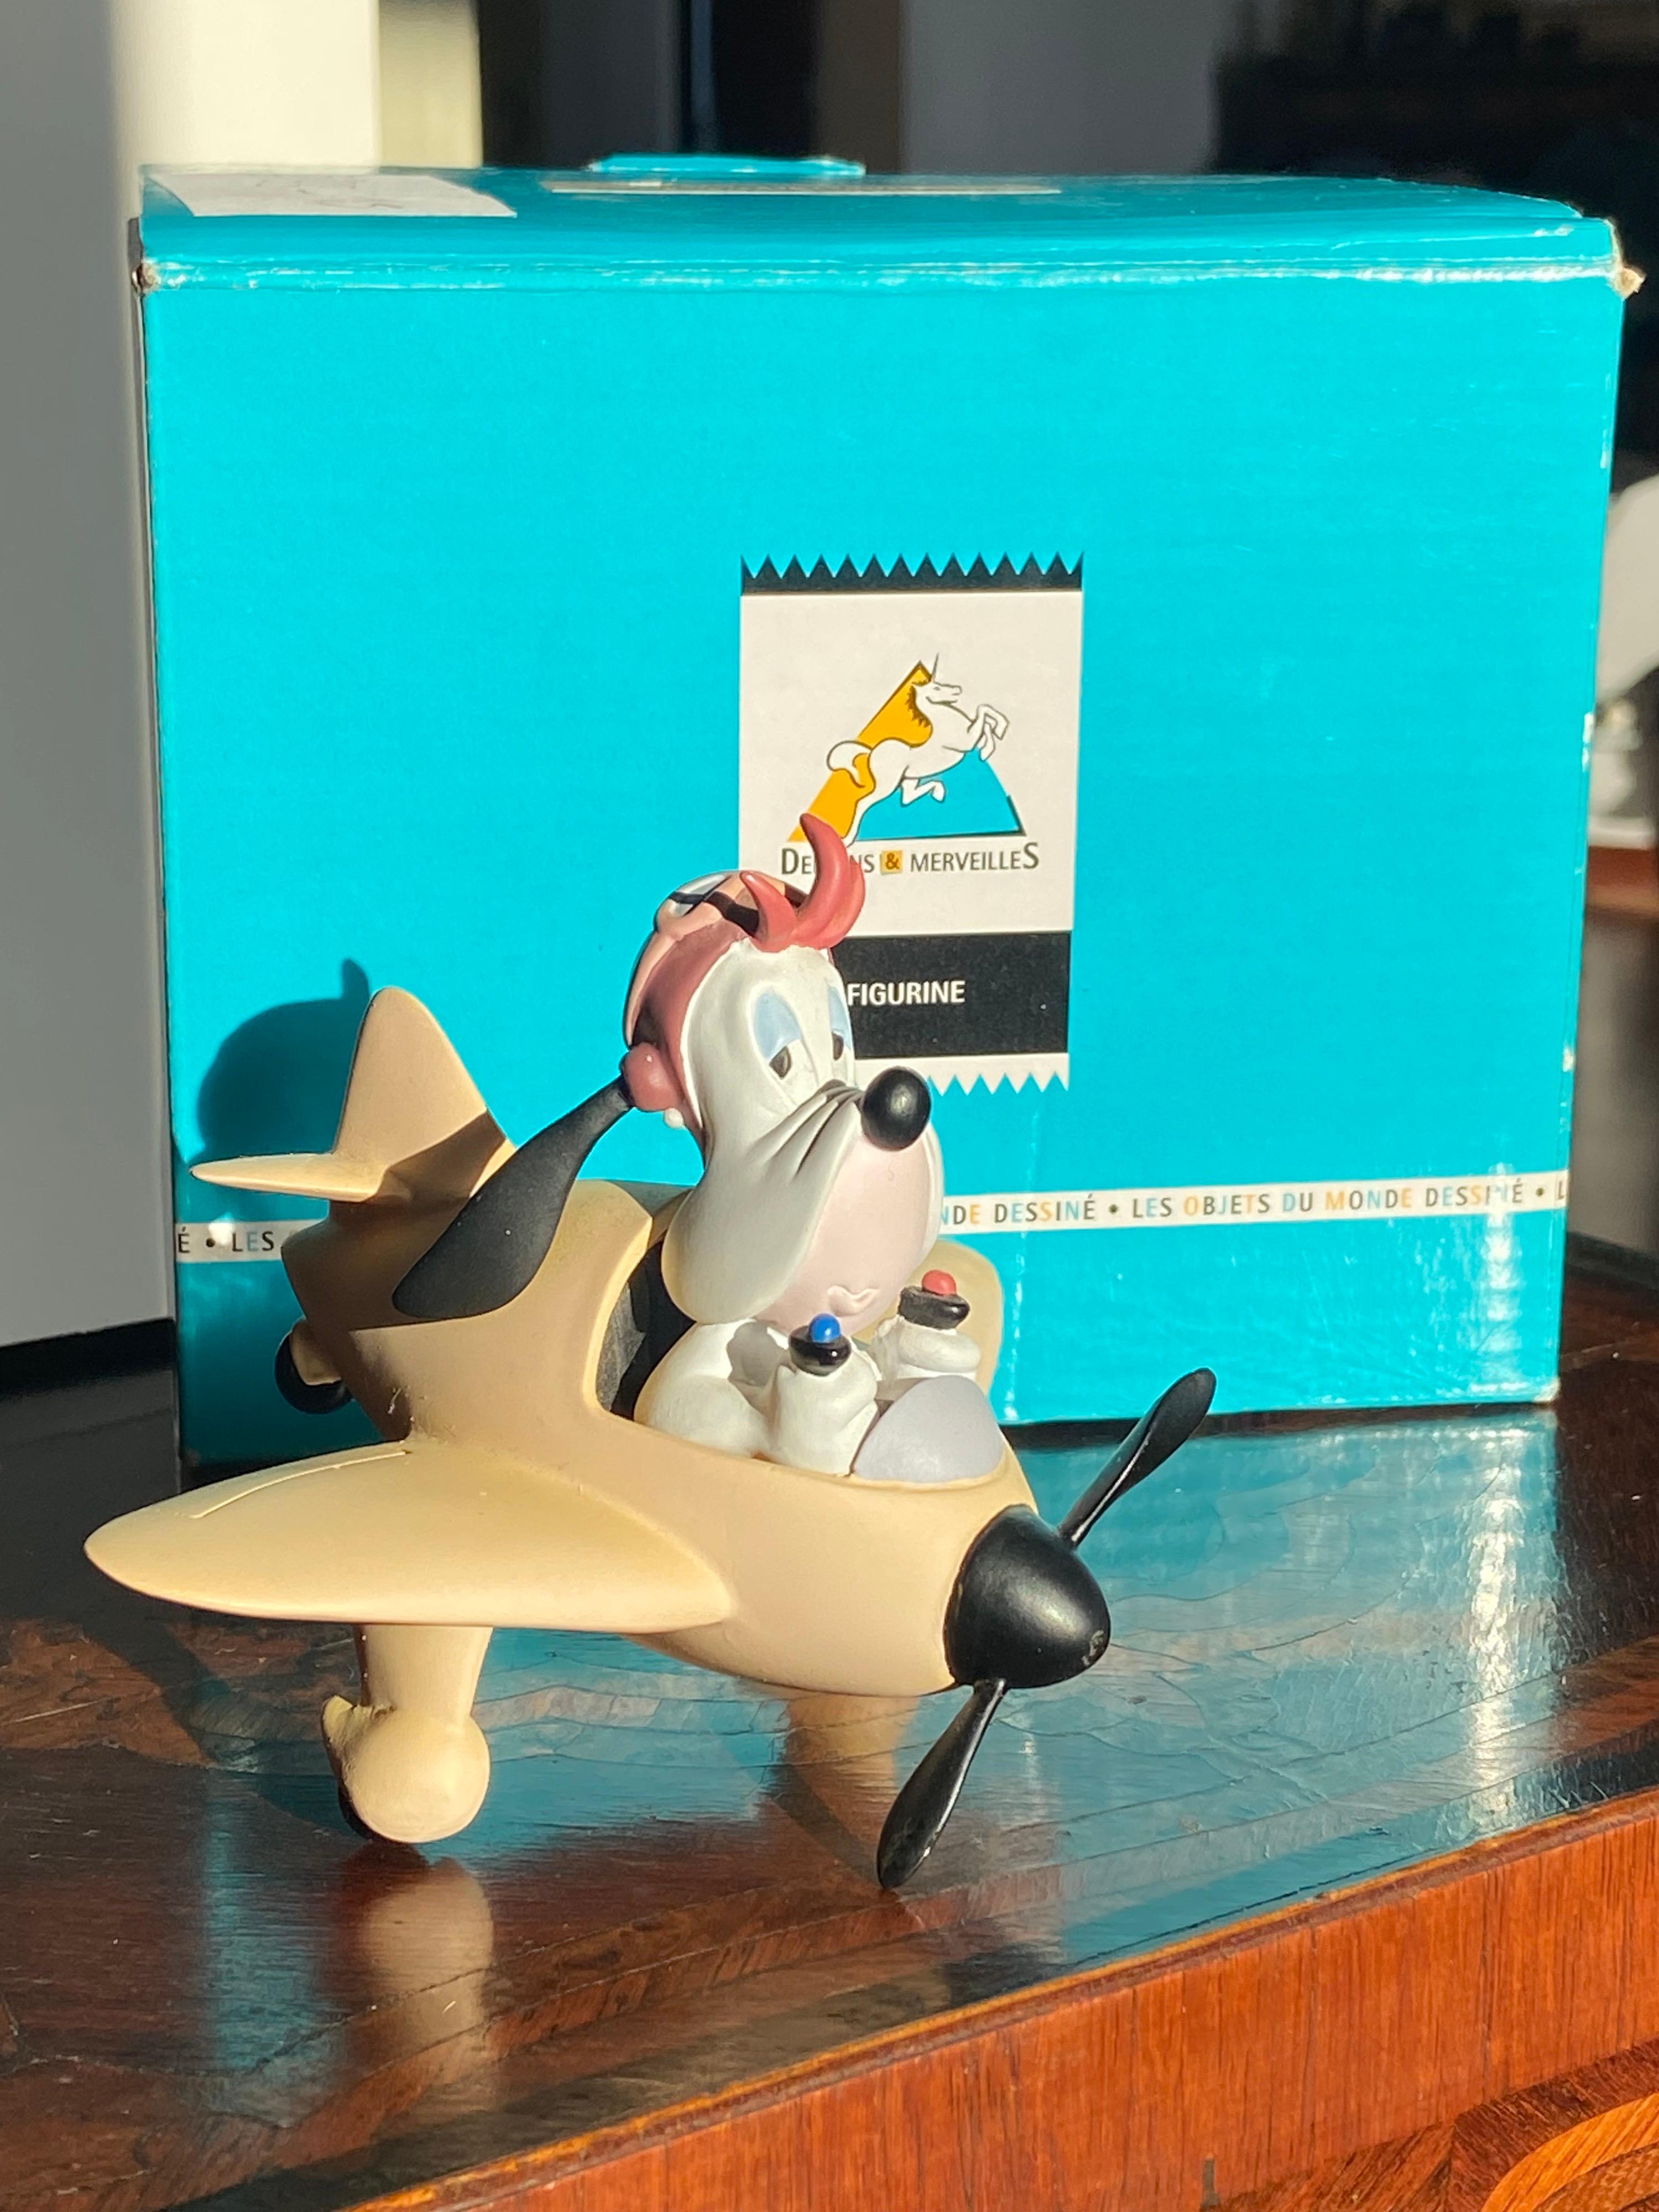 Statue figurine de Droopy dans un avion par Demons & Merveilles.
Fabriqué en 2001 dans sa boîte d'origine en parfait état.
Un cadeau parfait et un élément d'une grande collection.
USA, 2001.